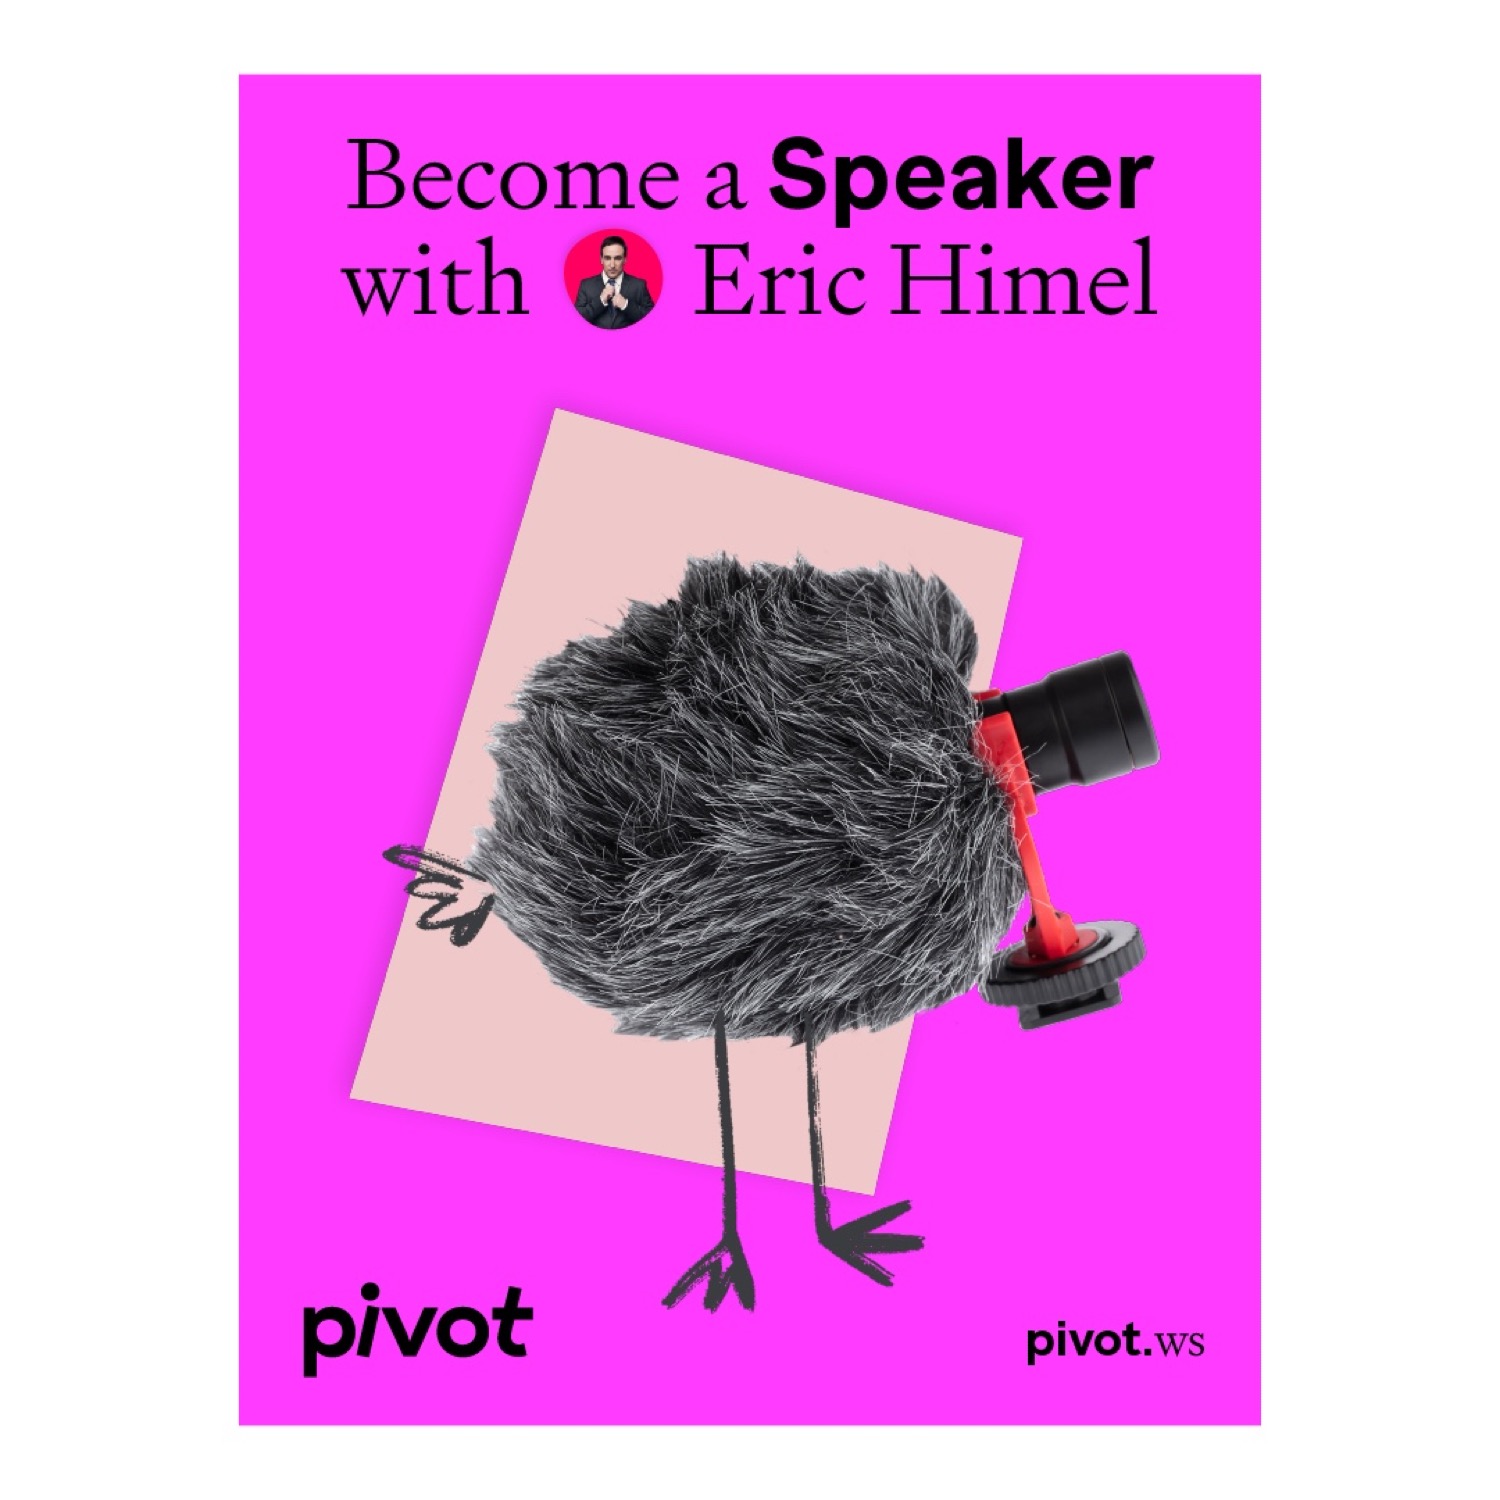 Pivot在线培训学校视觉形象设计